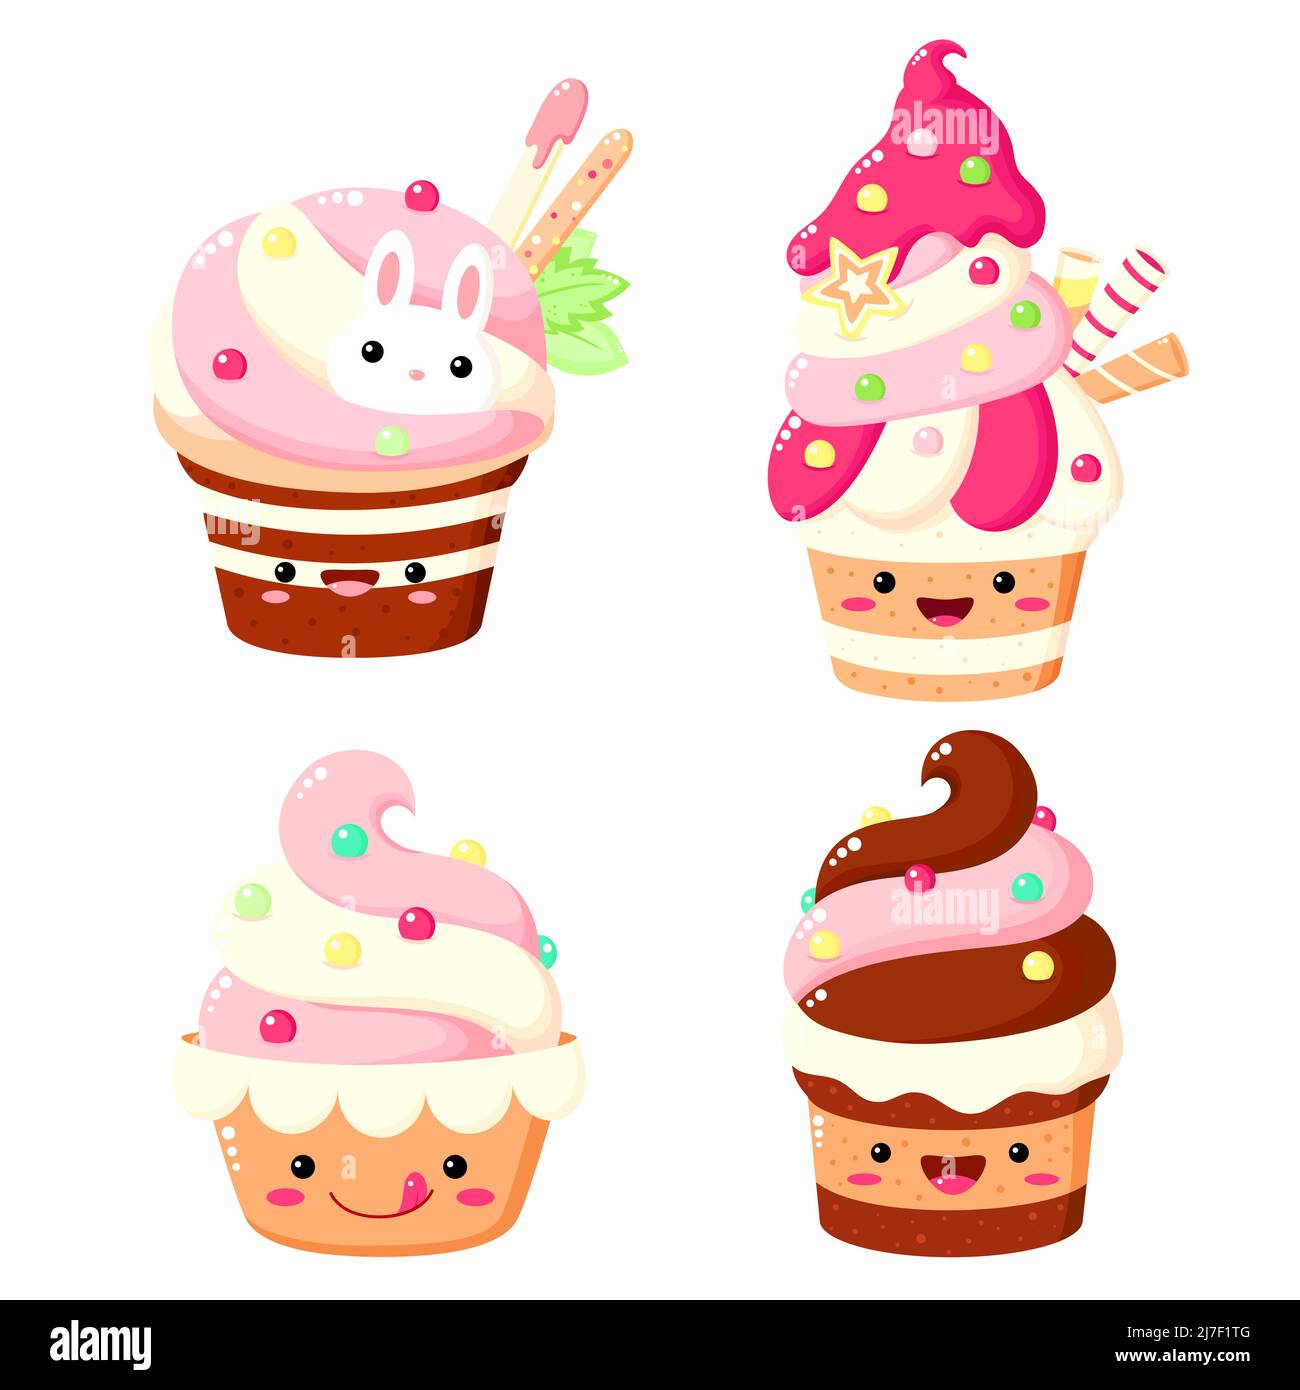 Ensemble de gâteau mignon, muffin, cupcake dans le style kawaii avec visage souriant et joues roses pour un joli motif. Illustration vectorielle EPS8 Illustration de Vecteur